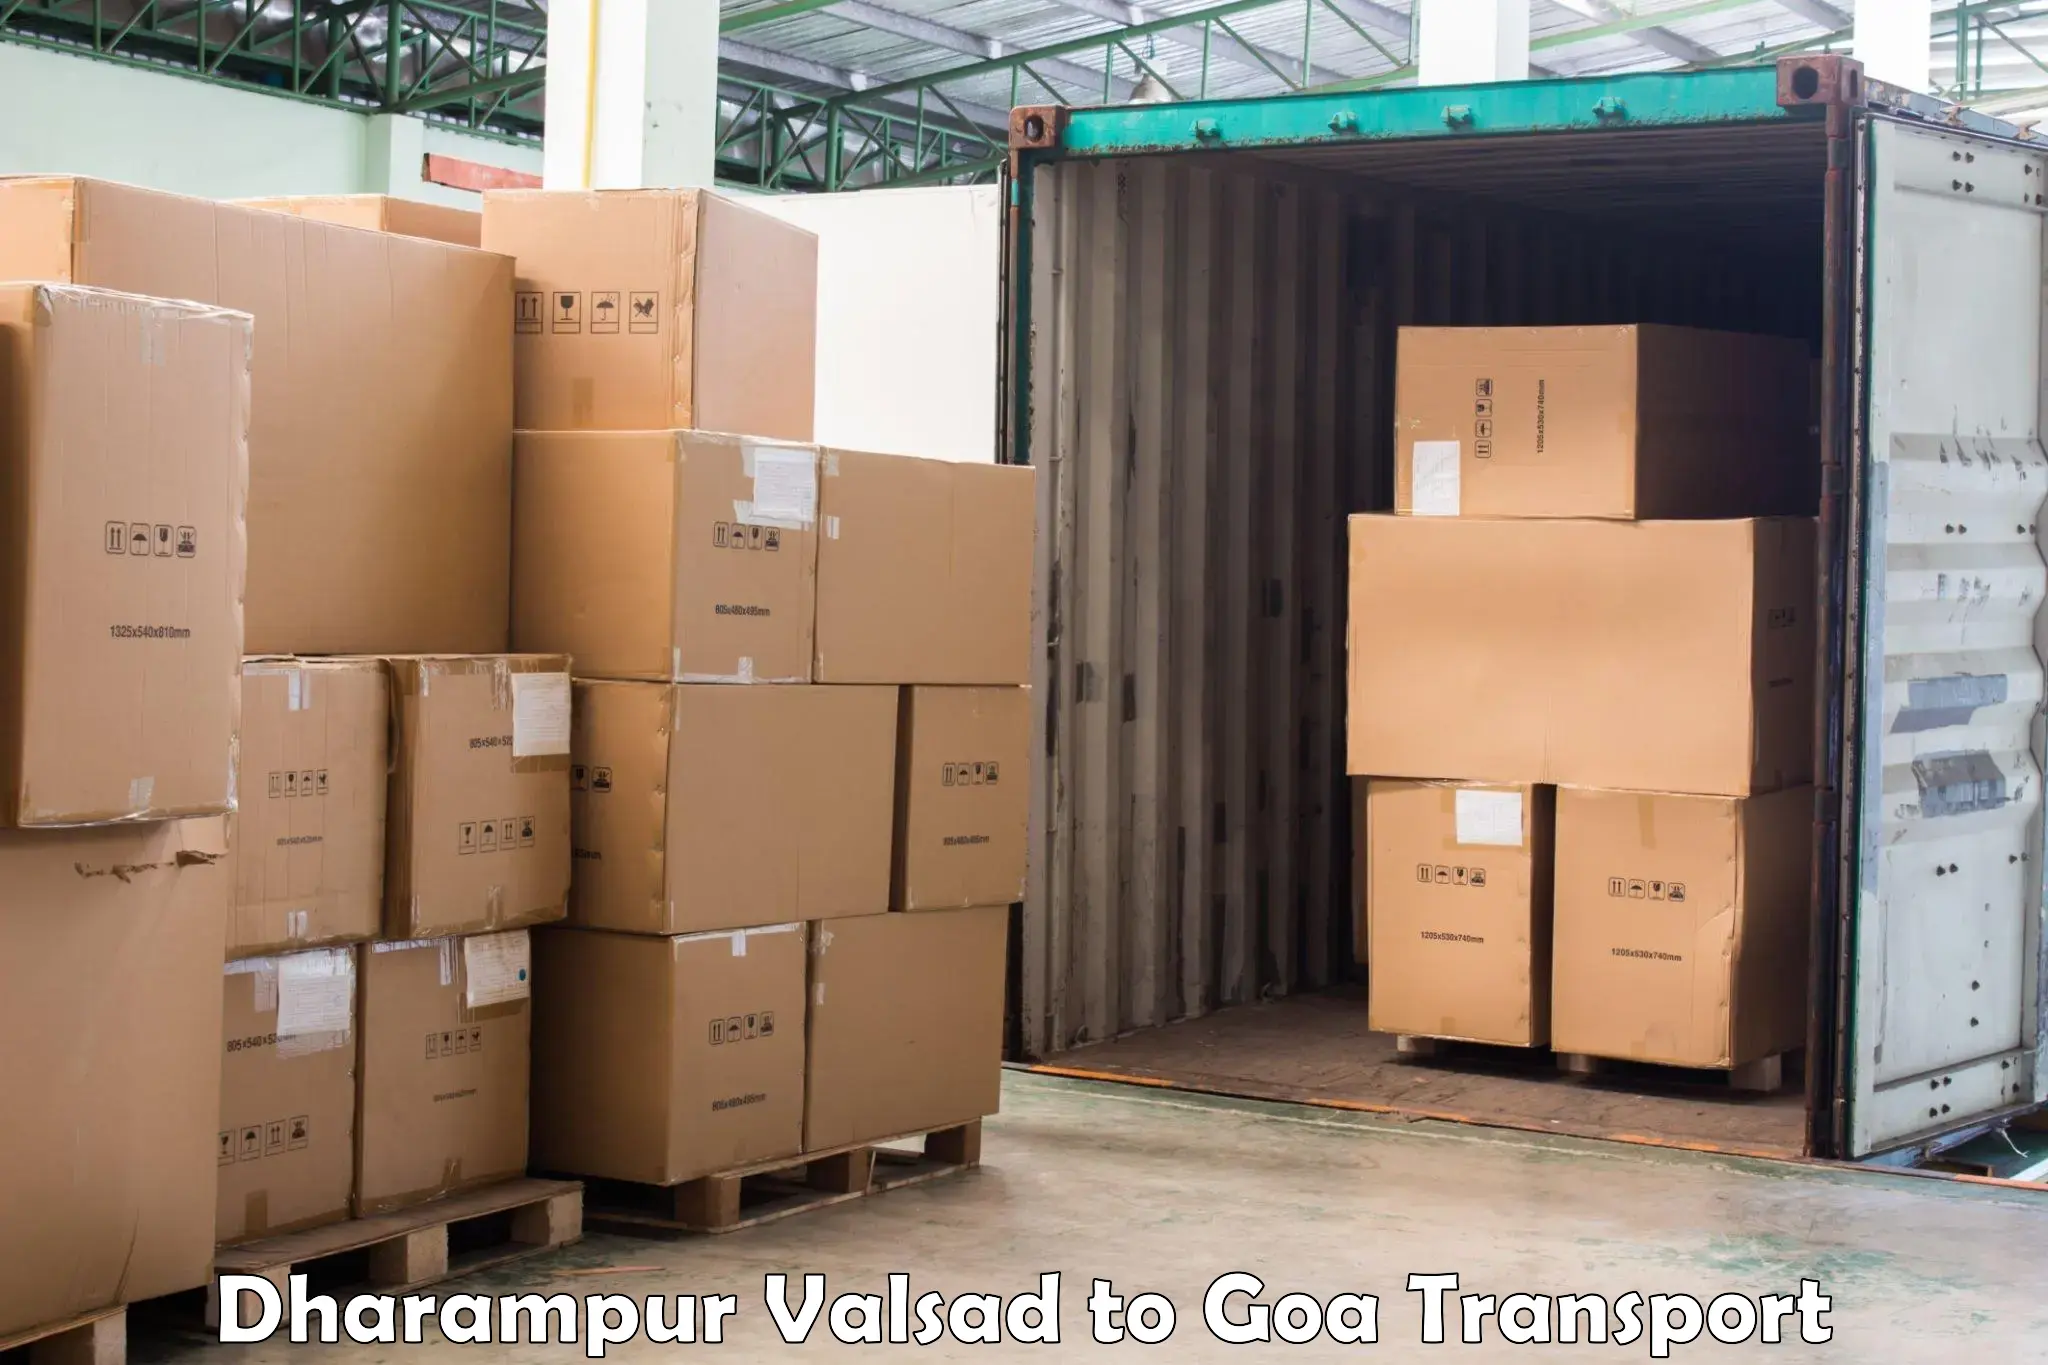 Land transport services Dharampur Valsad to Sanvordem